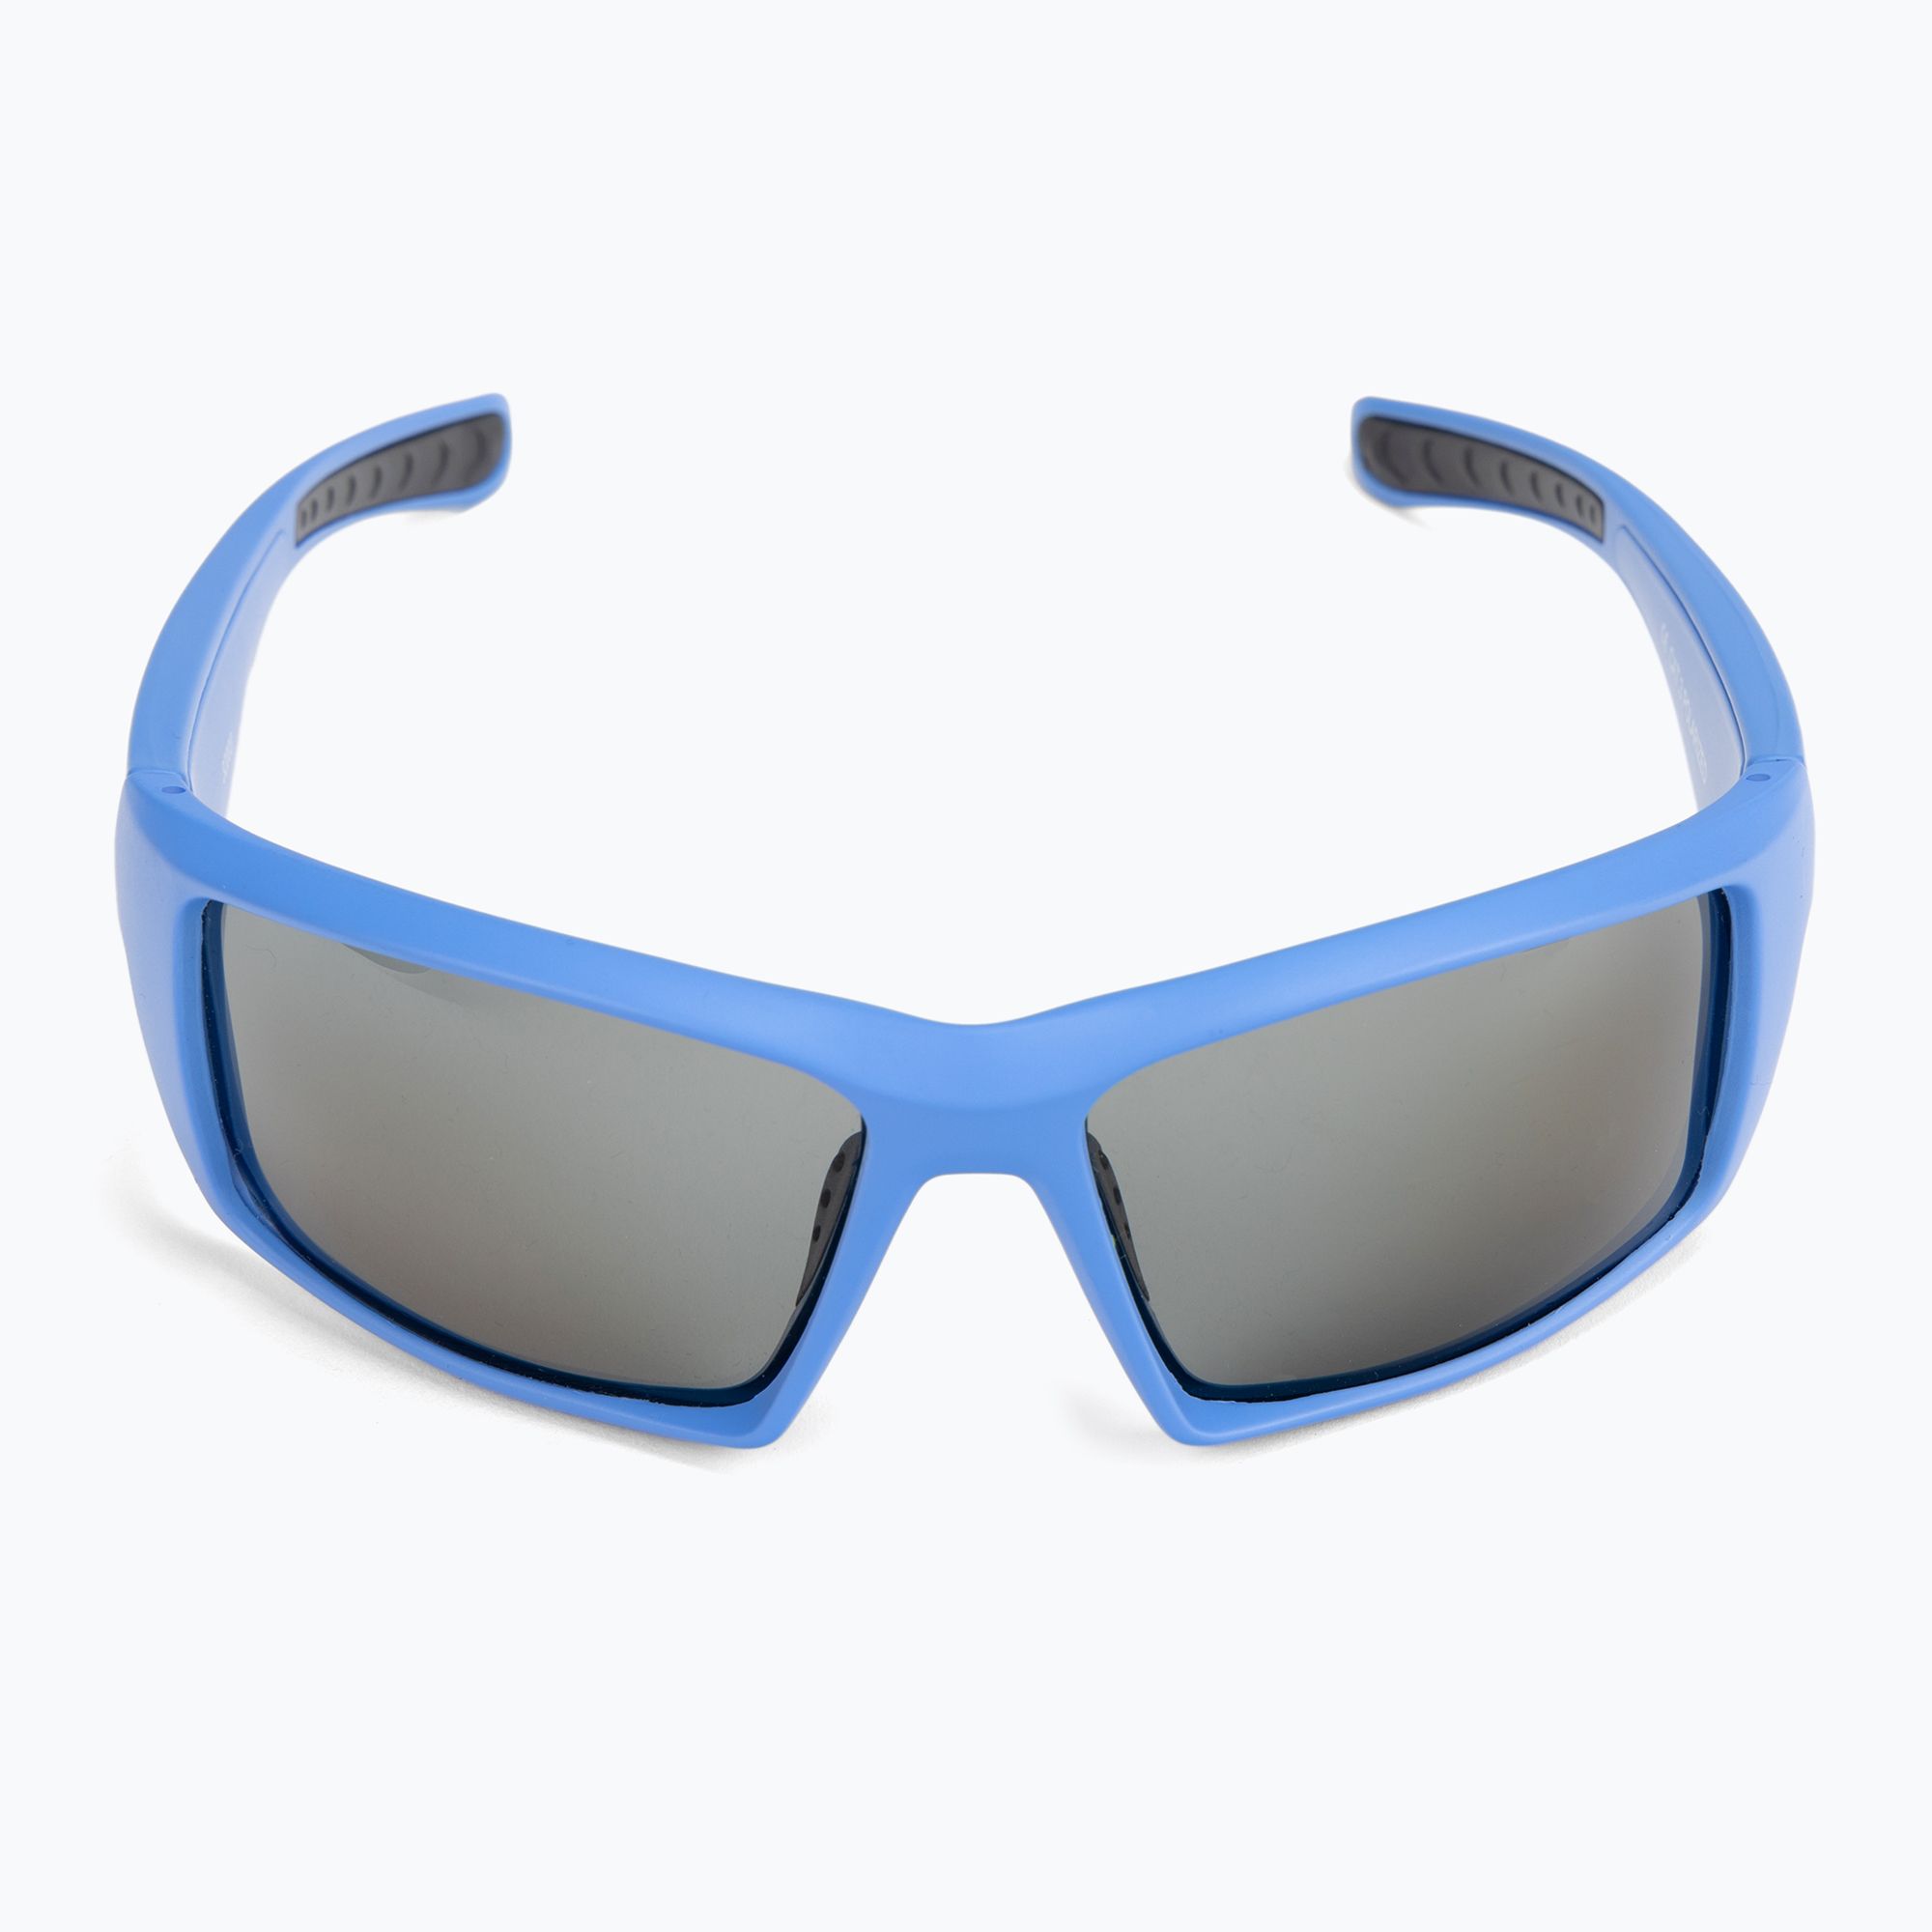 Okulary przeciwsłoneczne Ocean Sunglasses Aruba matte blue/smoke zdjęcie nr 3